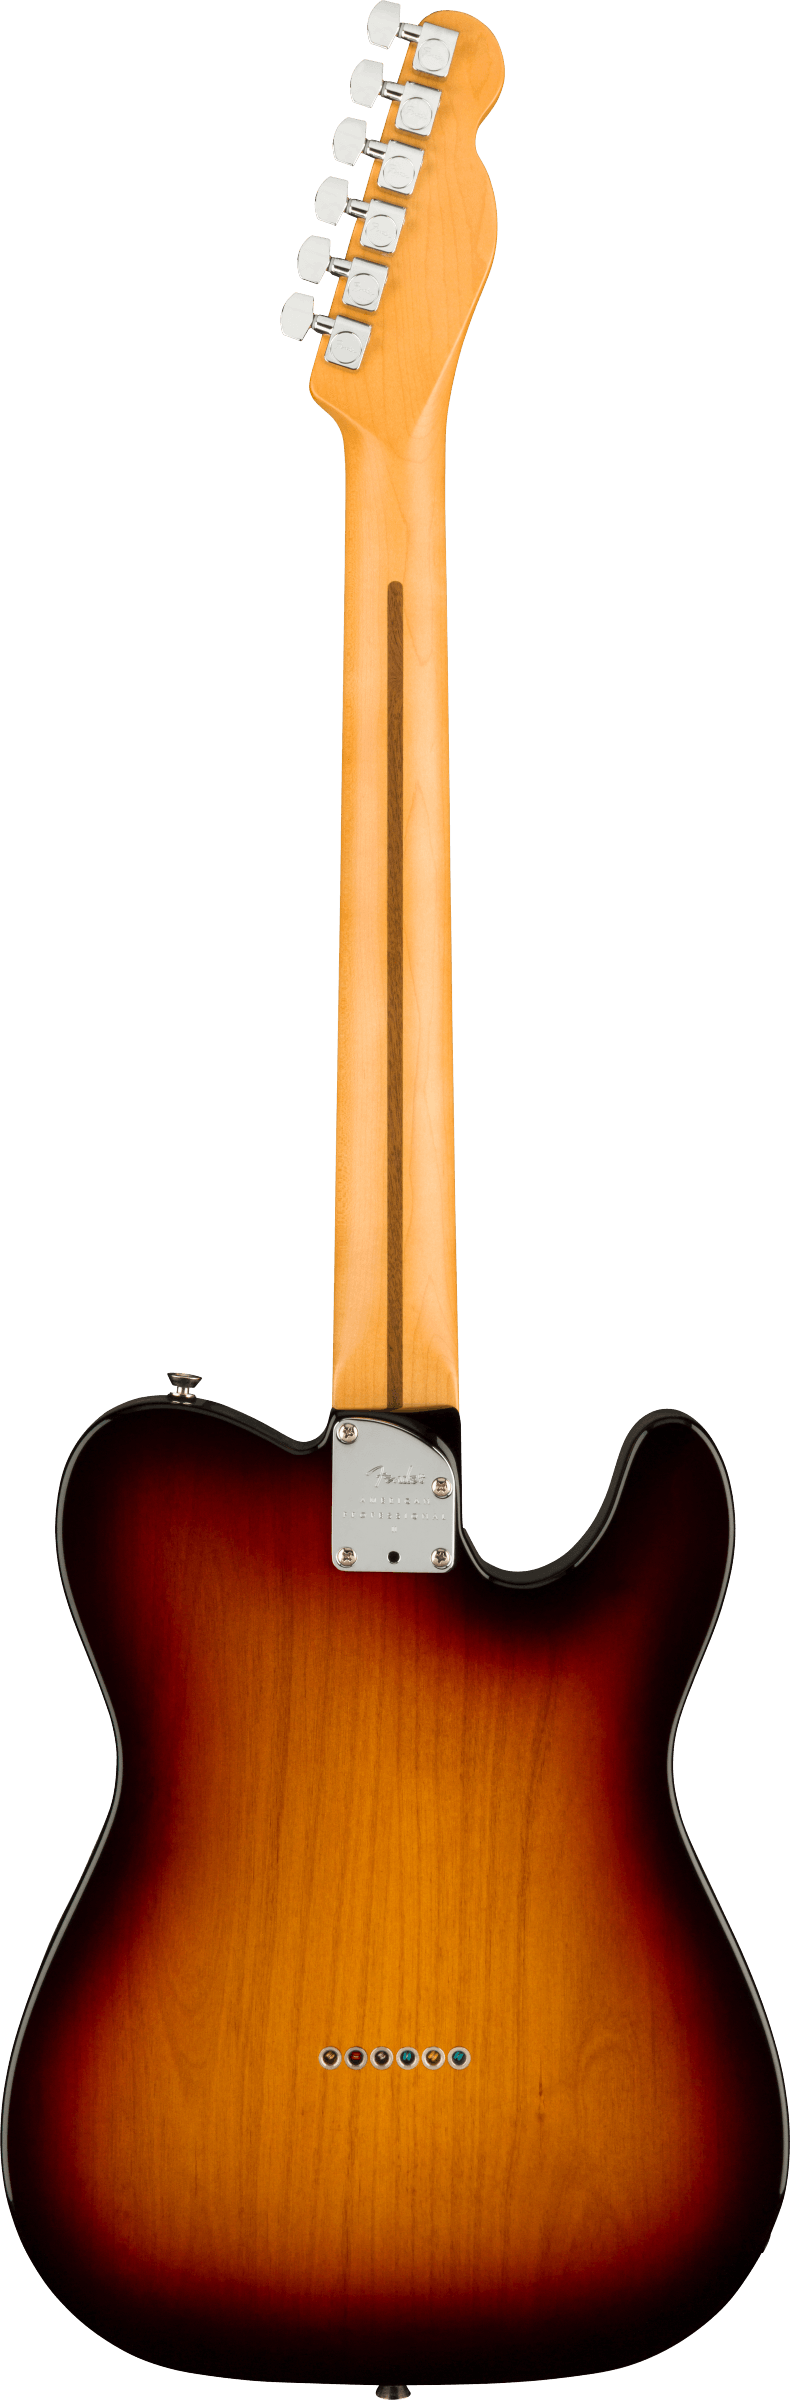 Fender American Professional II Telecaster Left-Hand, Rosewood Fingerboard, 3-Color Sunburst